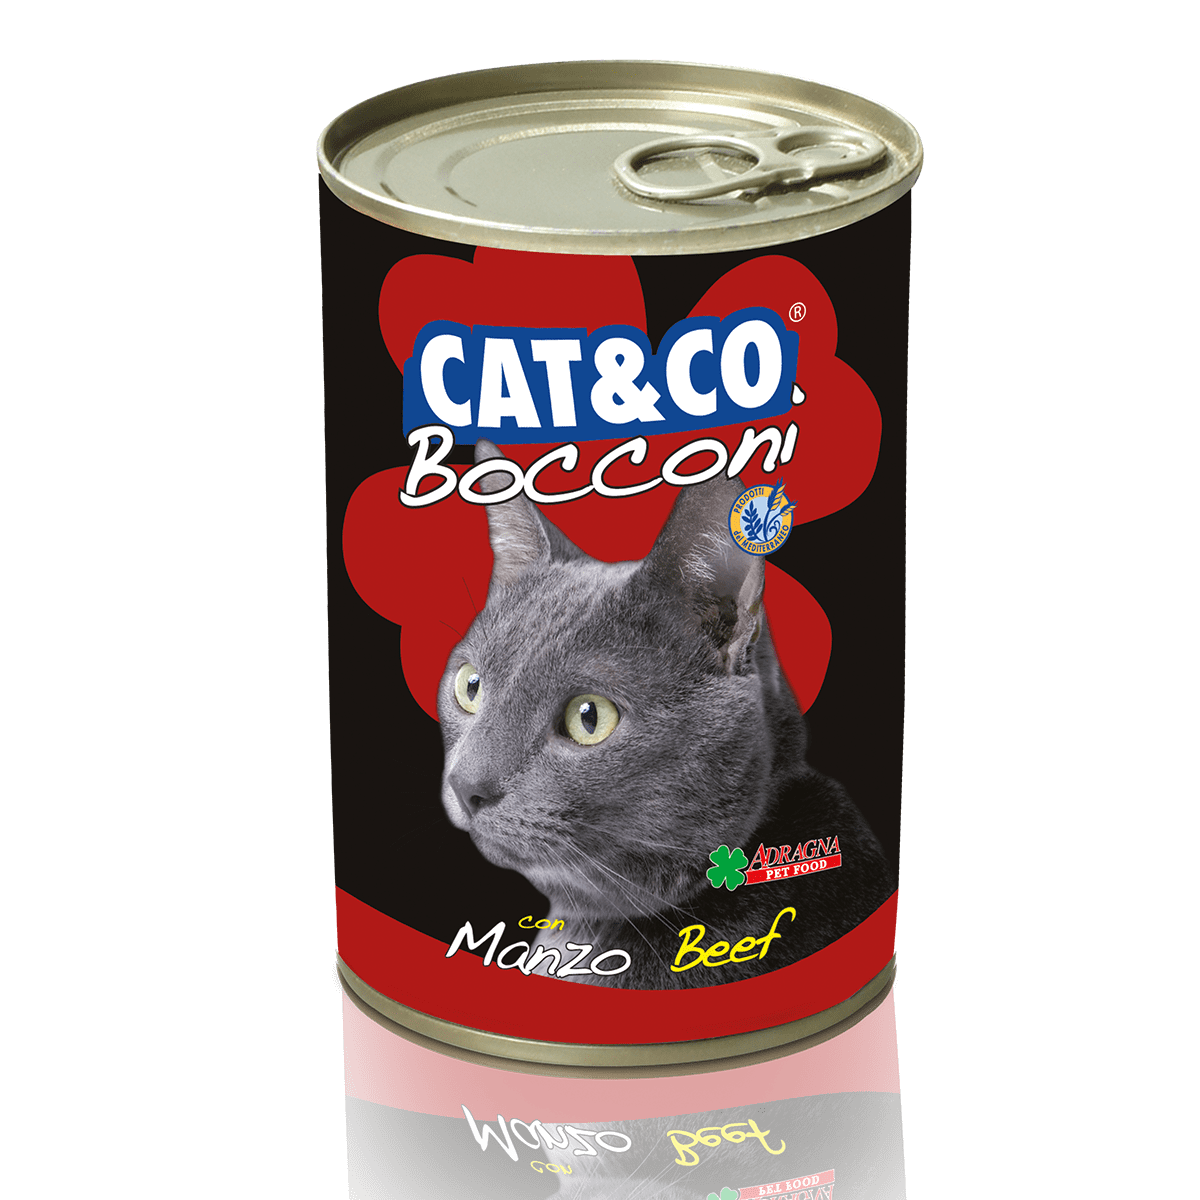 Cat&Co Bocconi Manzo